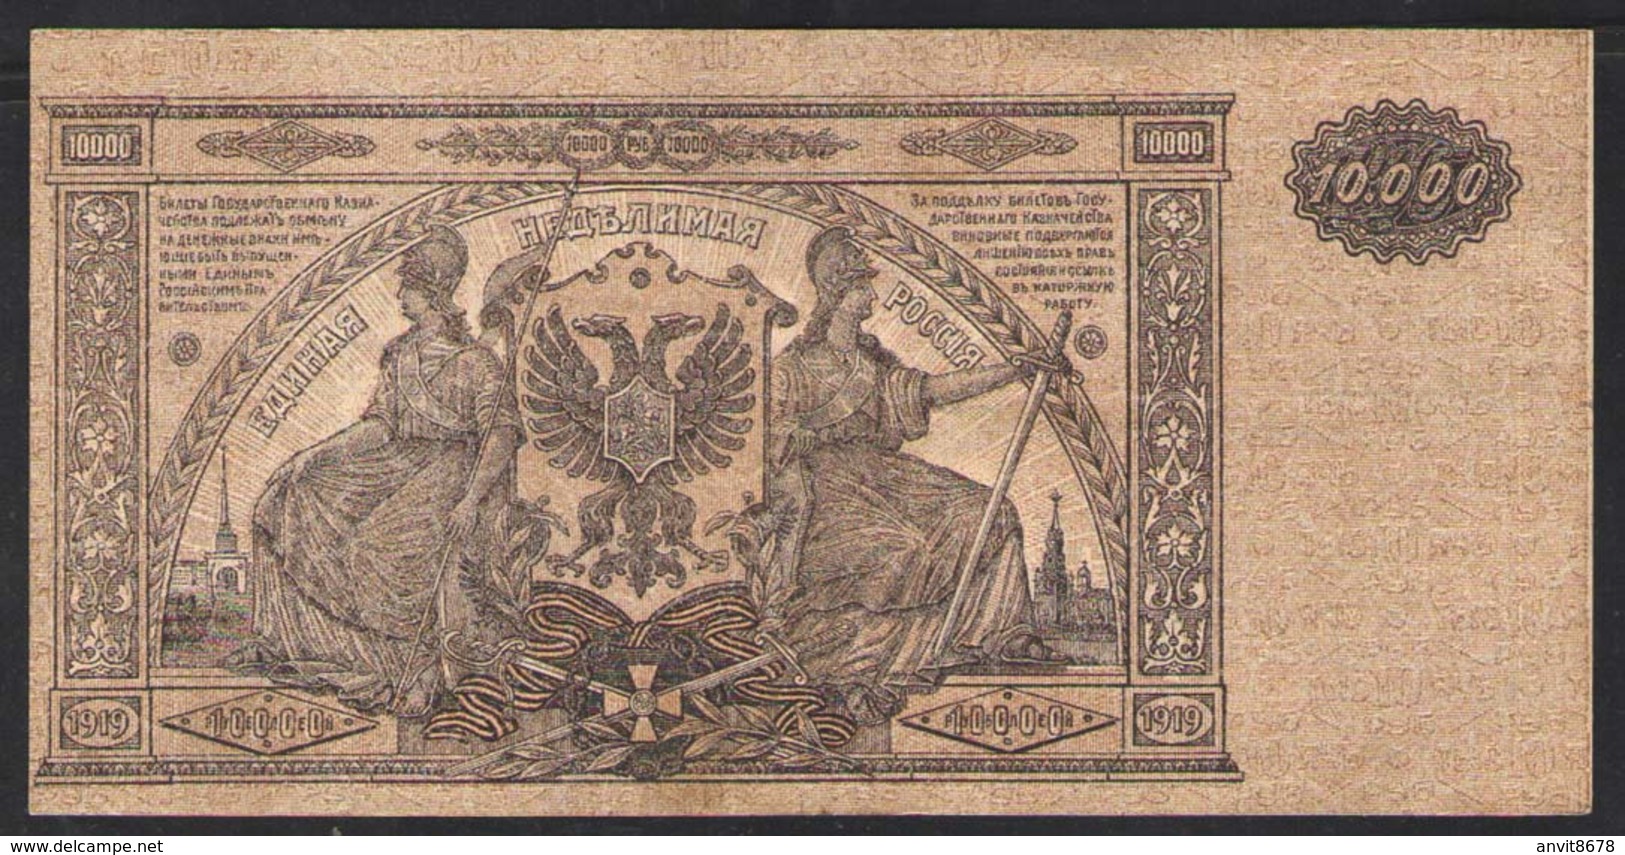 10000 руб   СЕРИЯ ЯВ-092  1919 - Russia